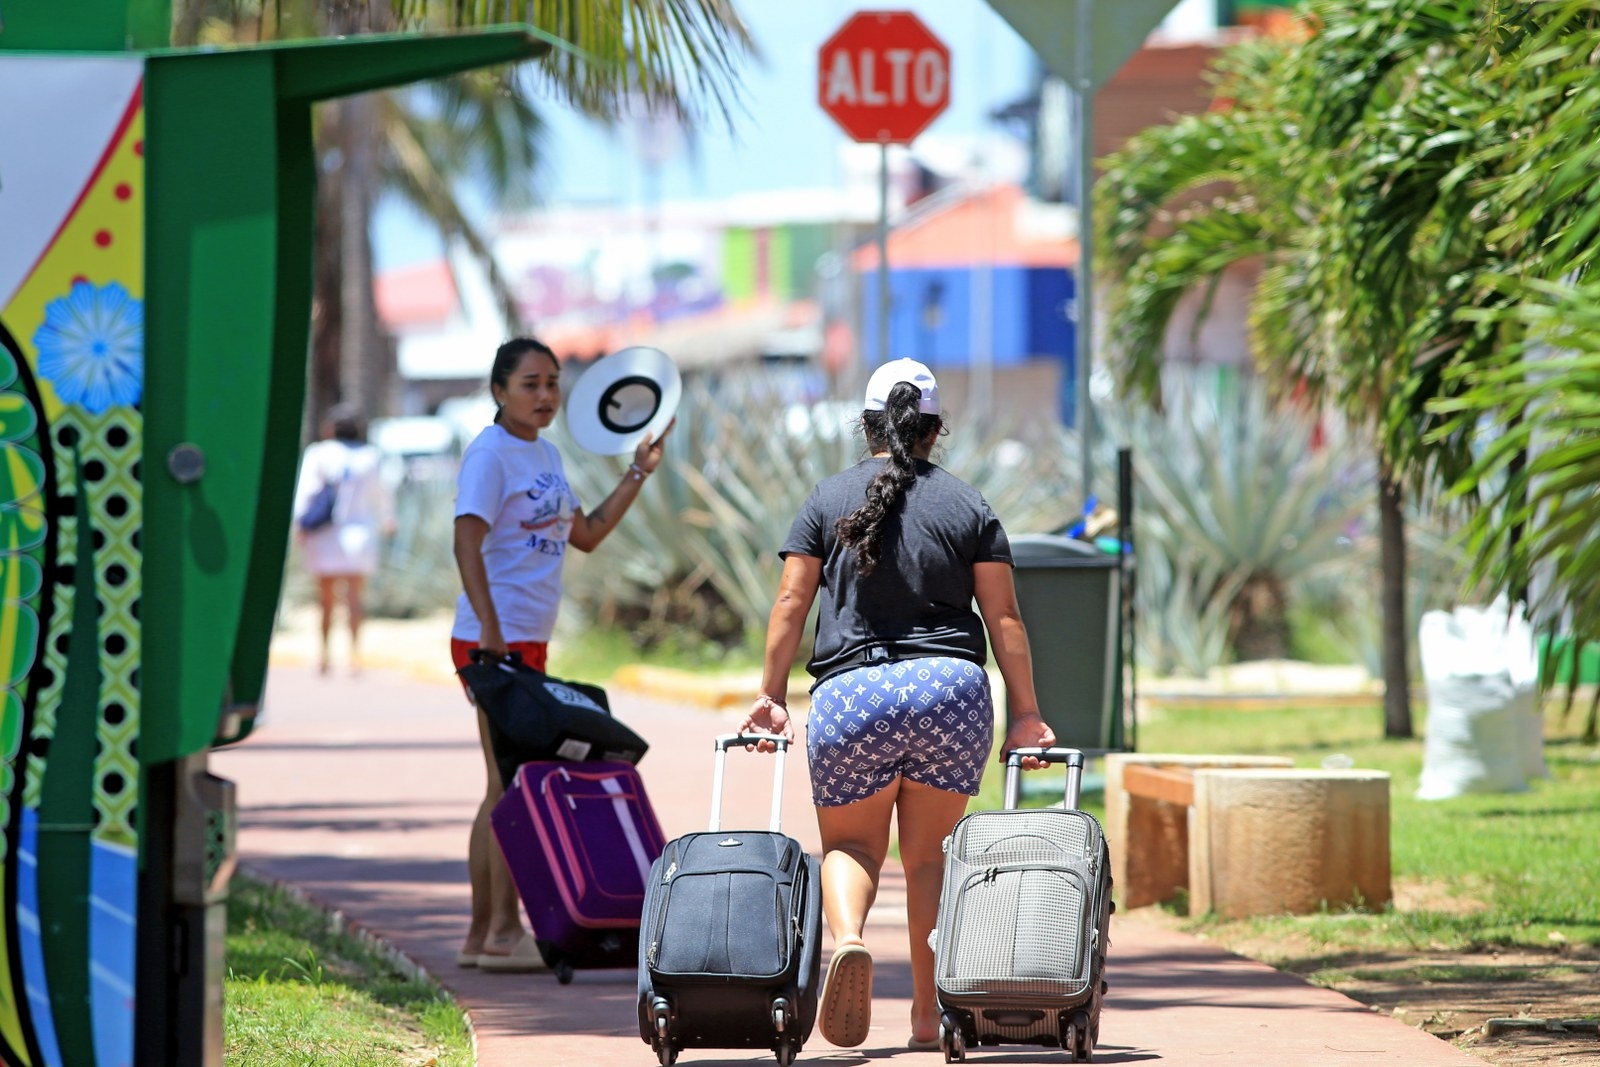 Alojamientos informarles en Cancún y Riviera Maya aumentó un 31.4% hasta agosto